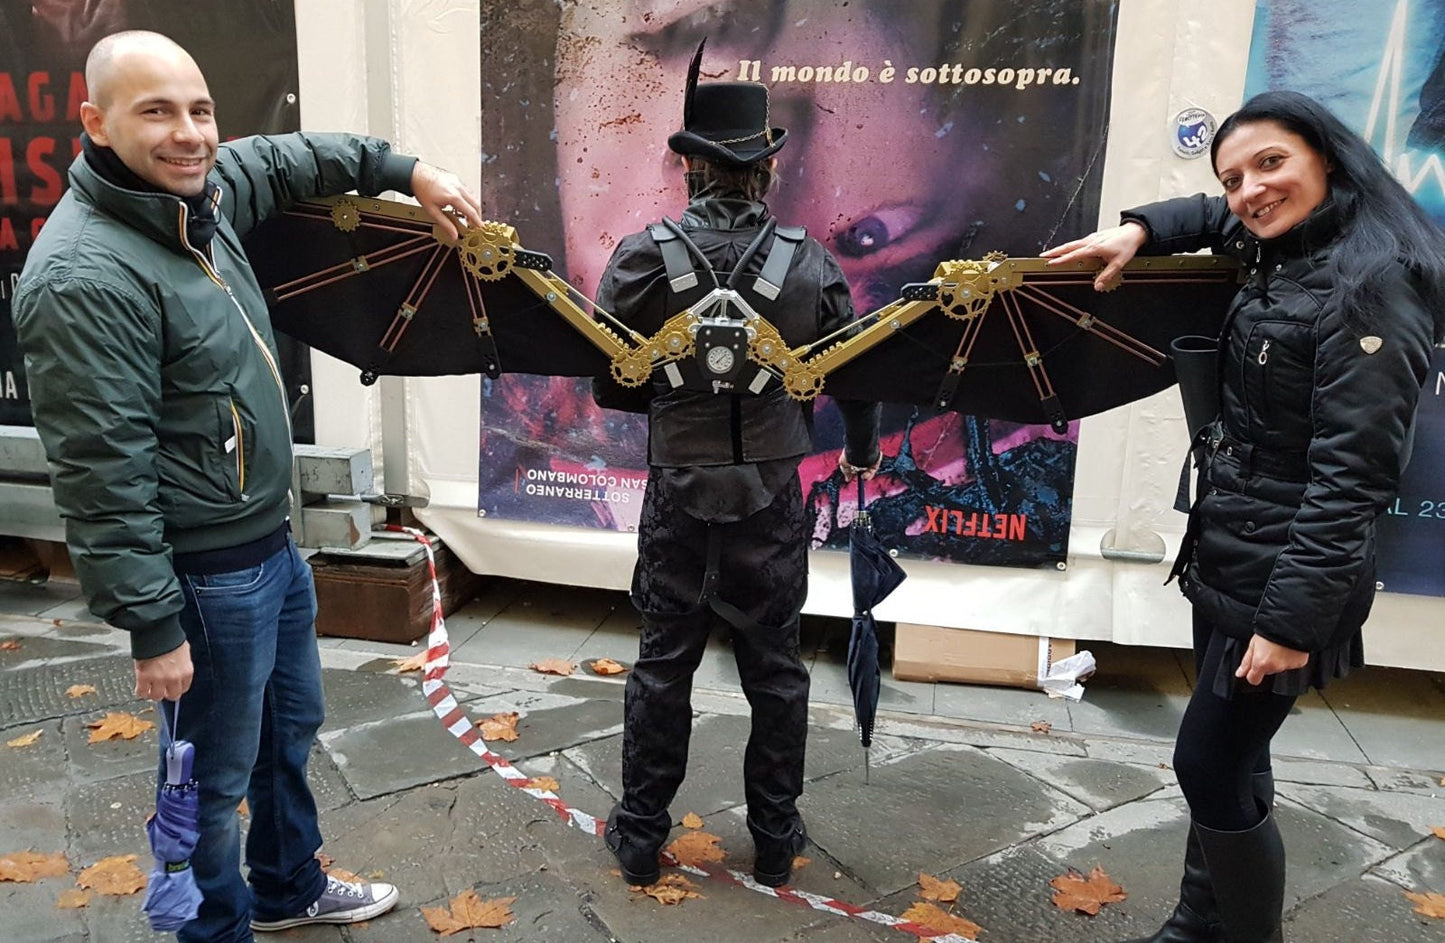 Deluxe CO2 Steampunk Wings - Opens 6.5 Feet Wide